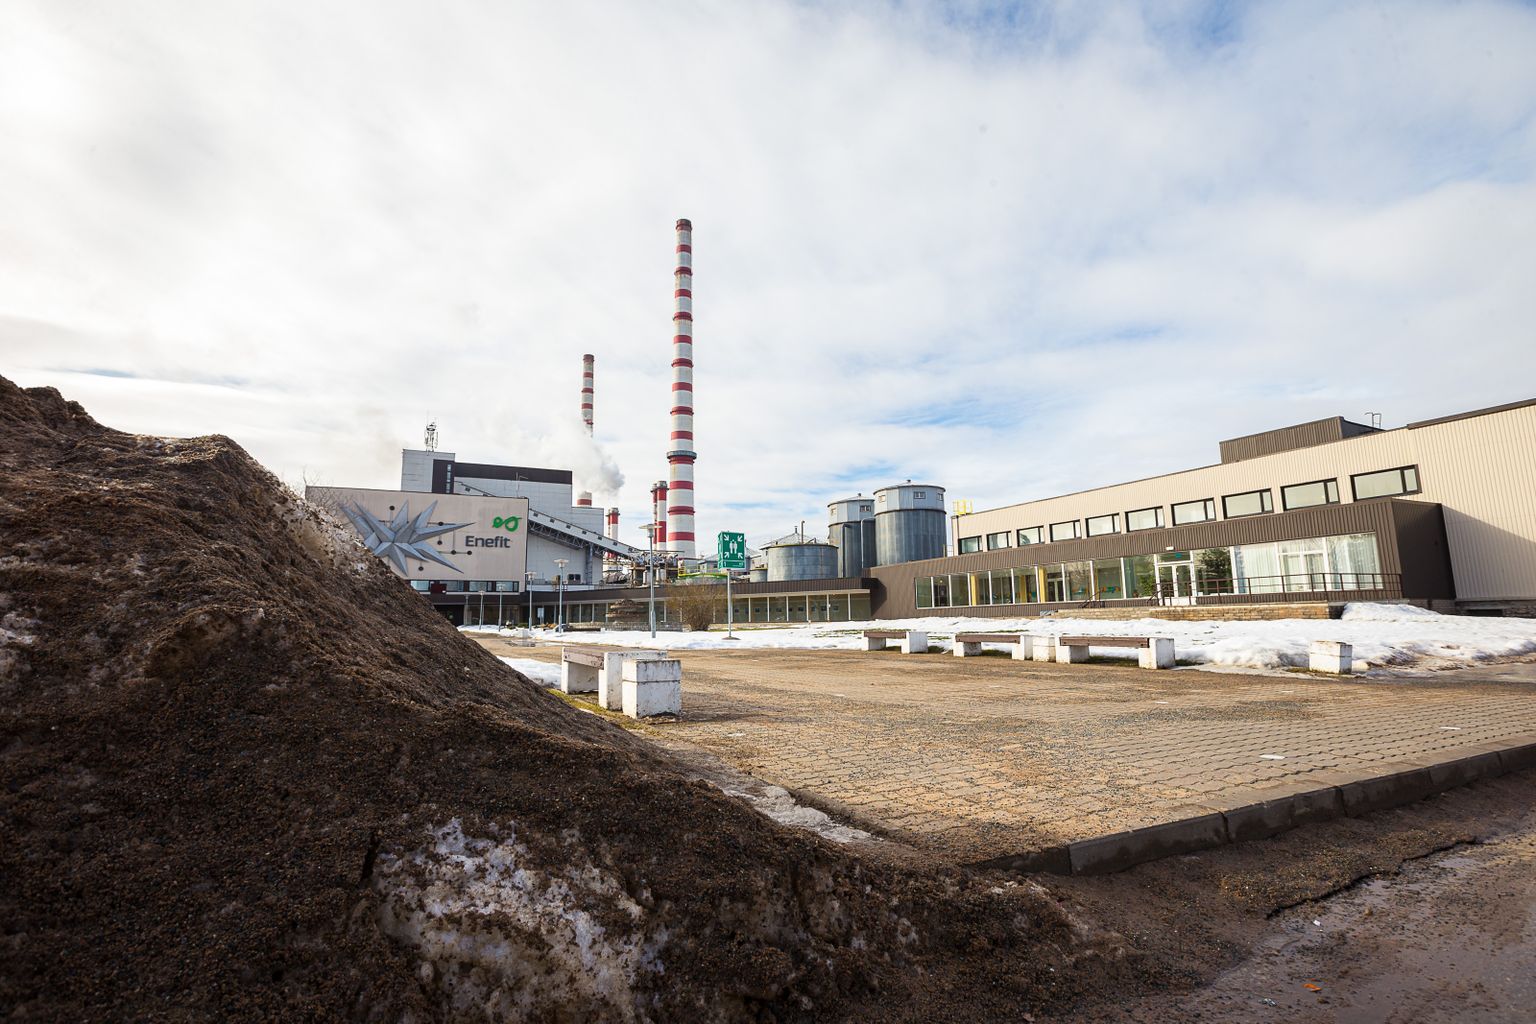 Наряду со сланцем Нарвские станции используют в качестве топлива все больше сланцевого газа и древесных отходов.